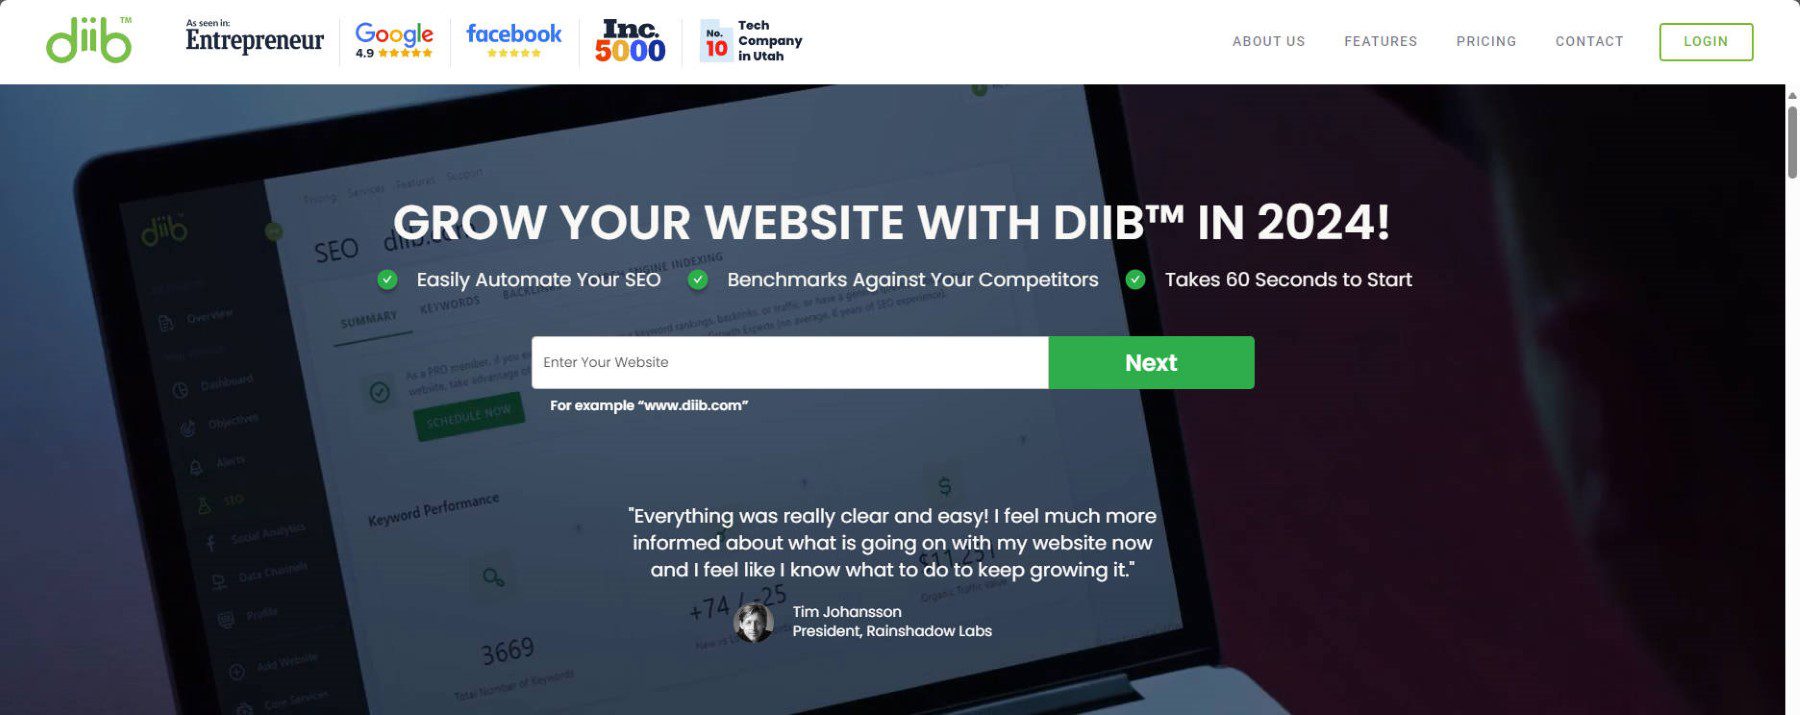 Diib - Homepage - February 2024